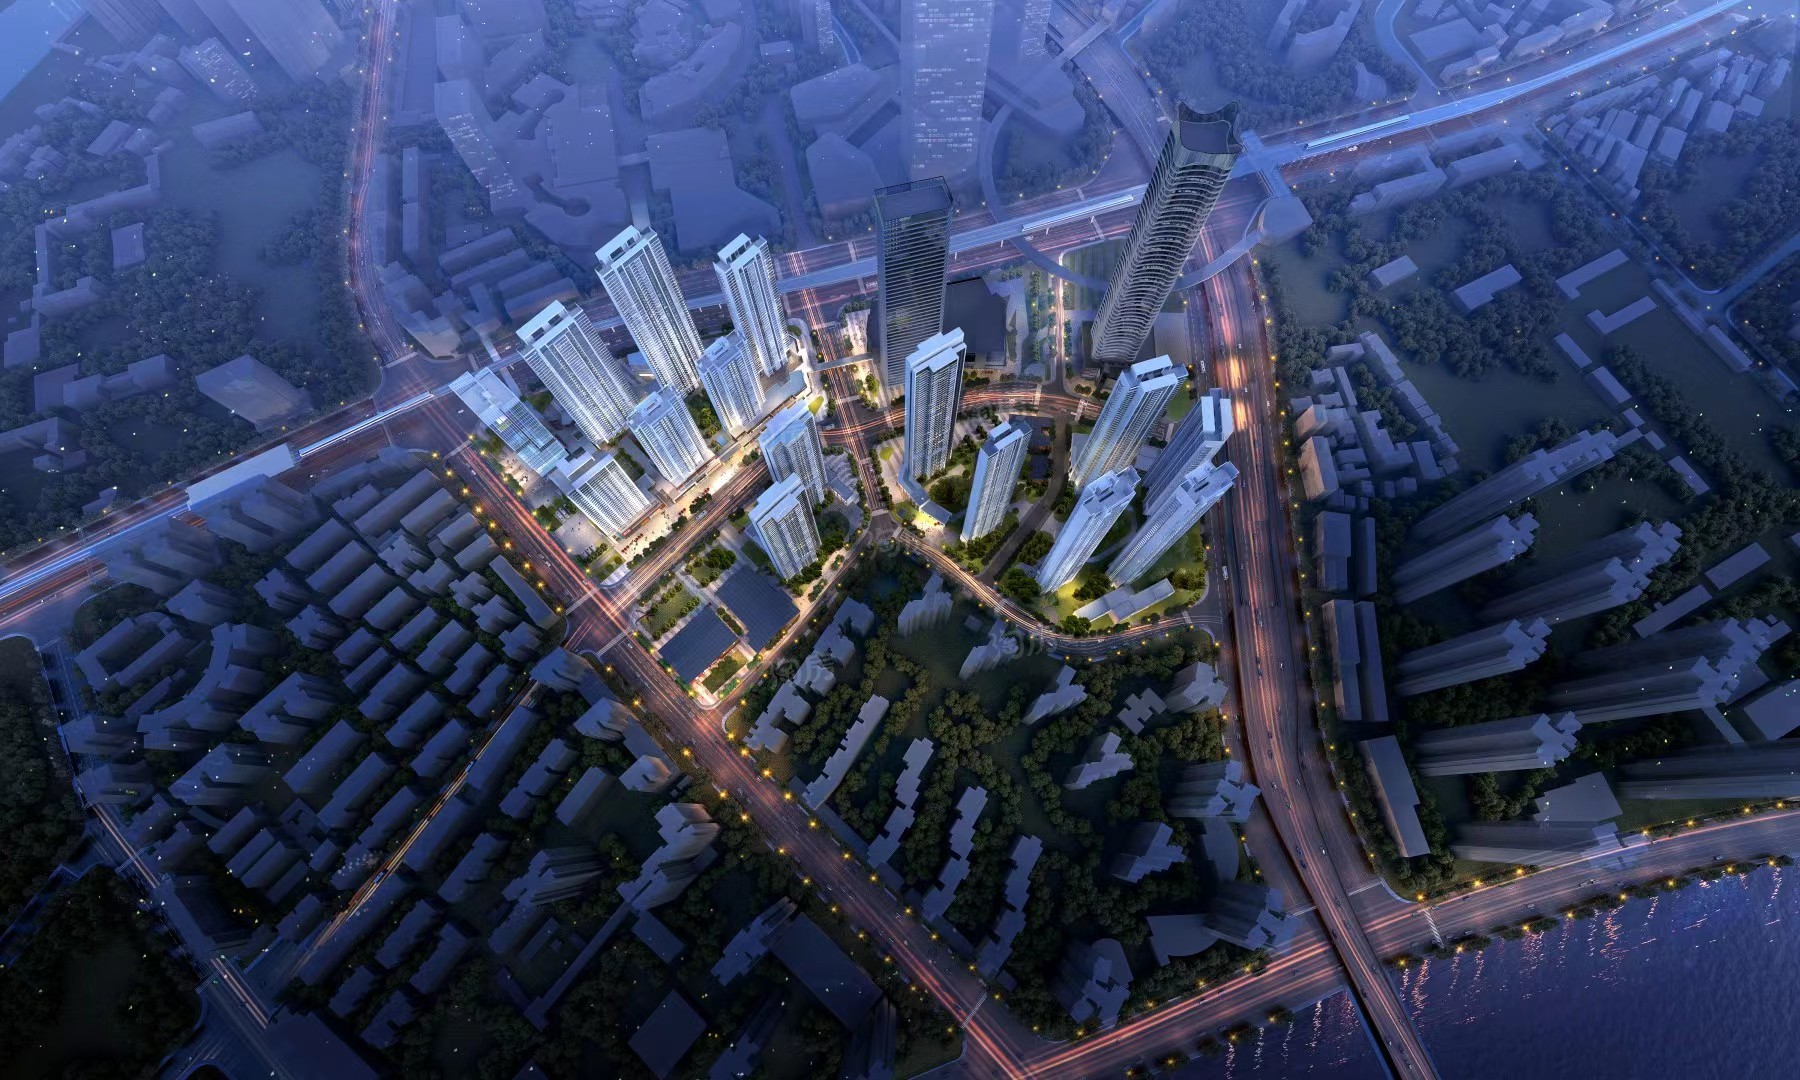 武汉硚口区中国铁建·招商蛇口·国著上宸项目如何呢？